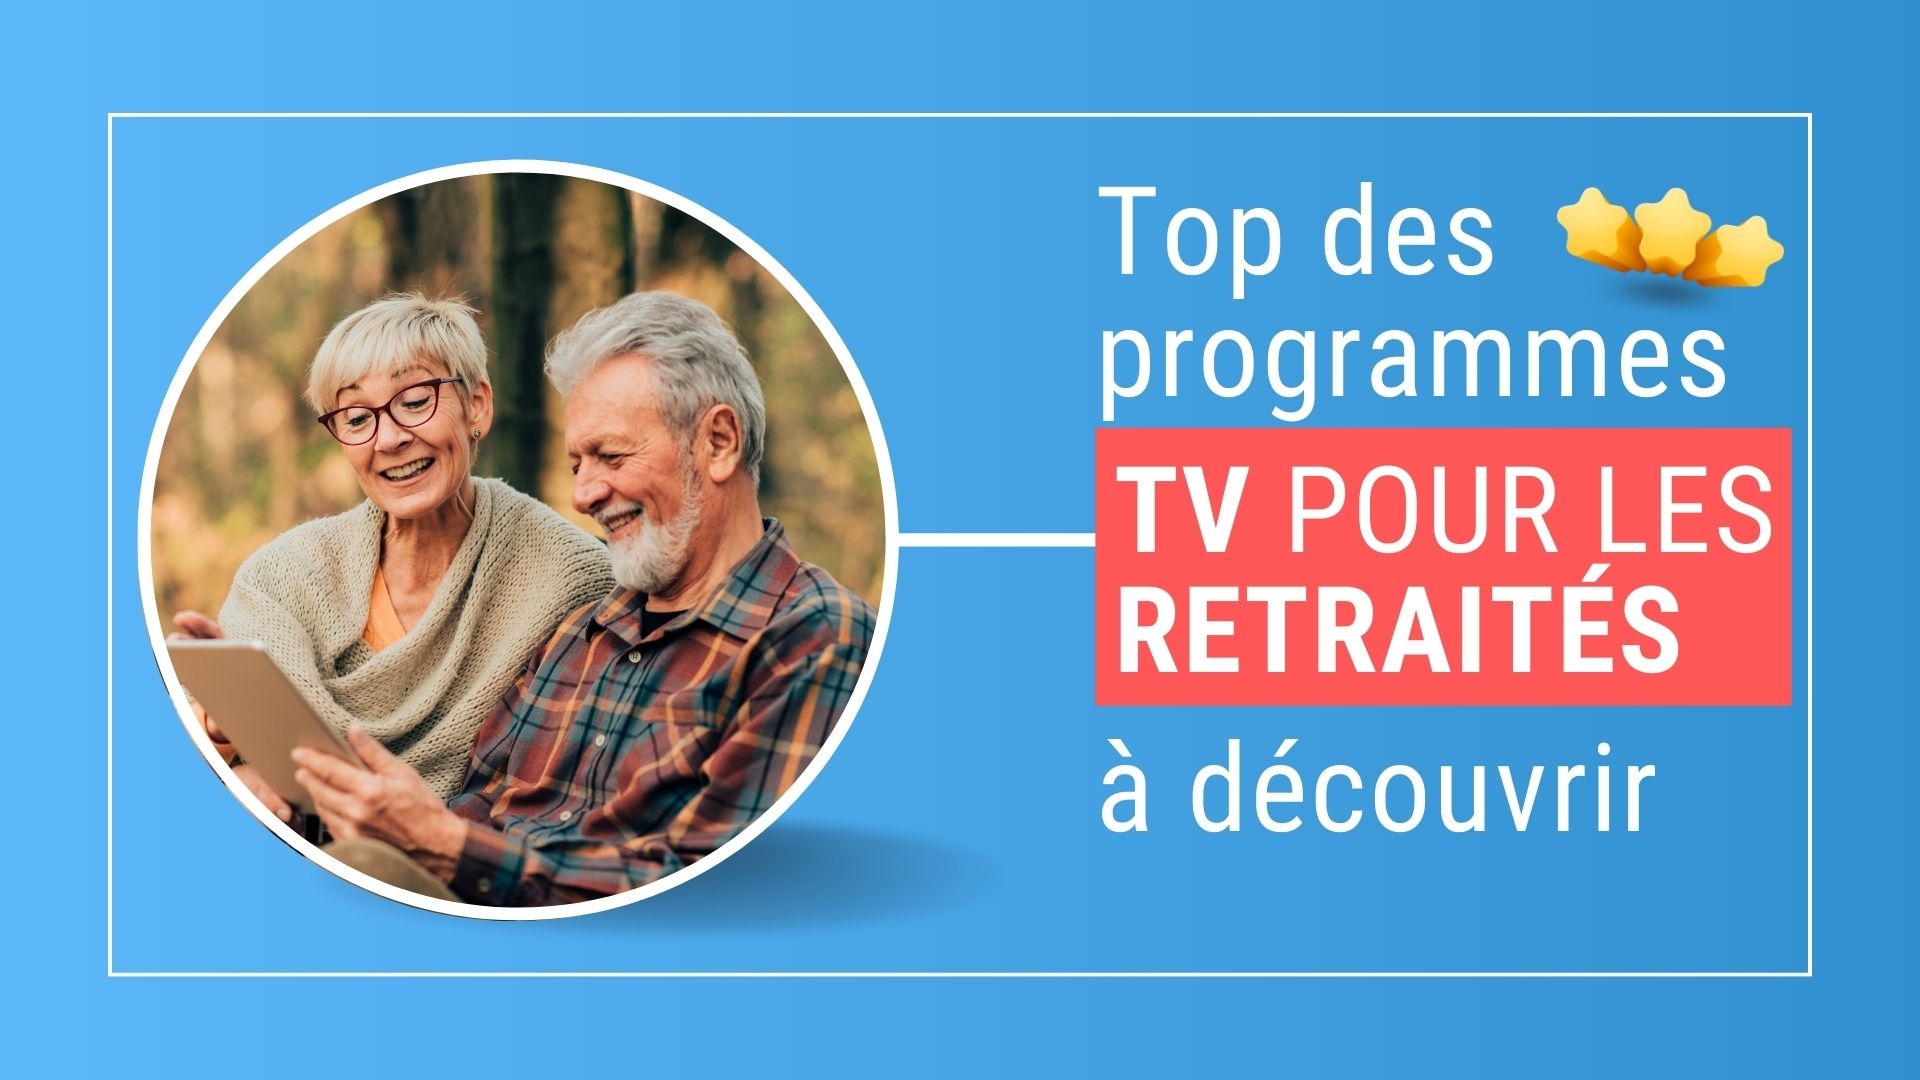 Les meilleurs programmes TV pour les retraités